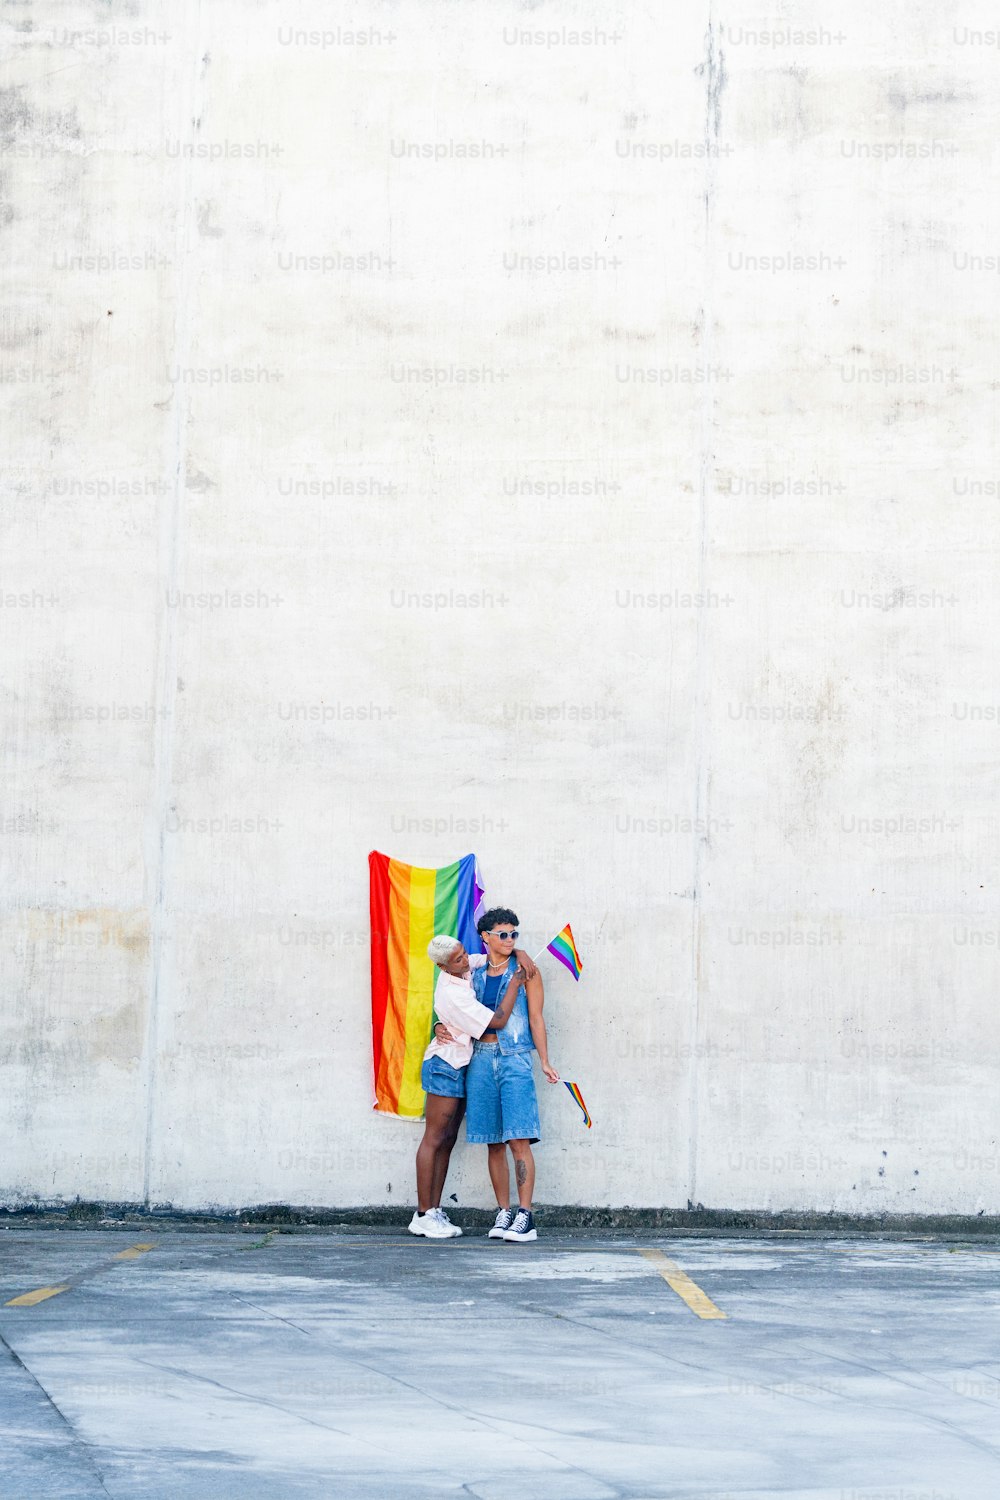 Un hombre y una mujer de pie uno al lado del otro sosteniendo una bandera arcoíris